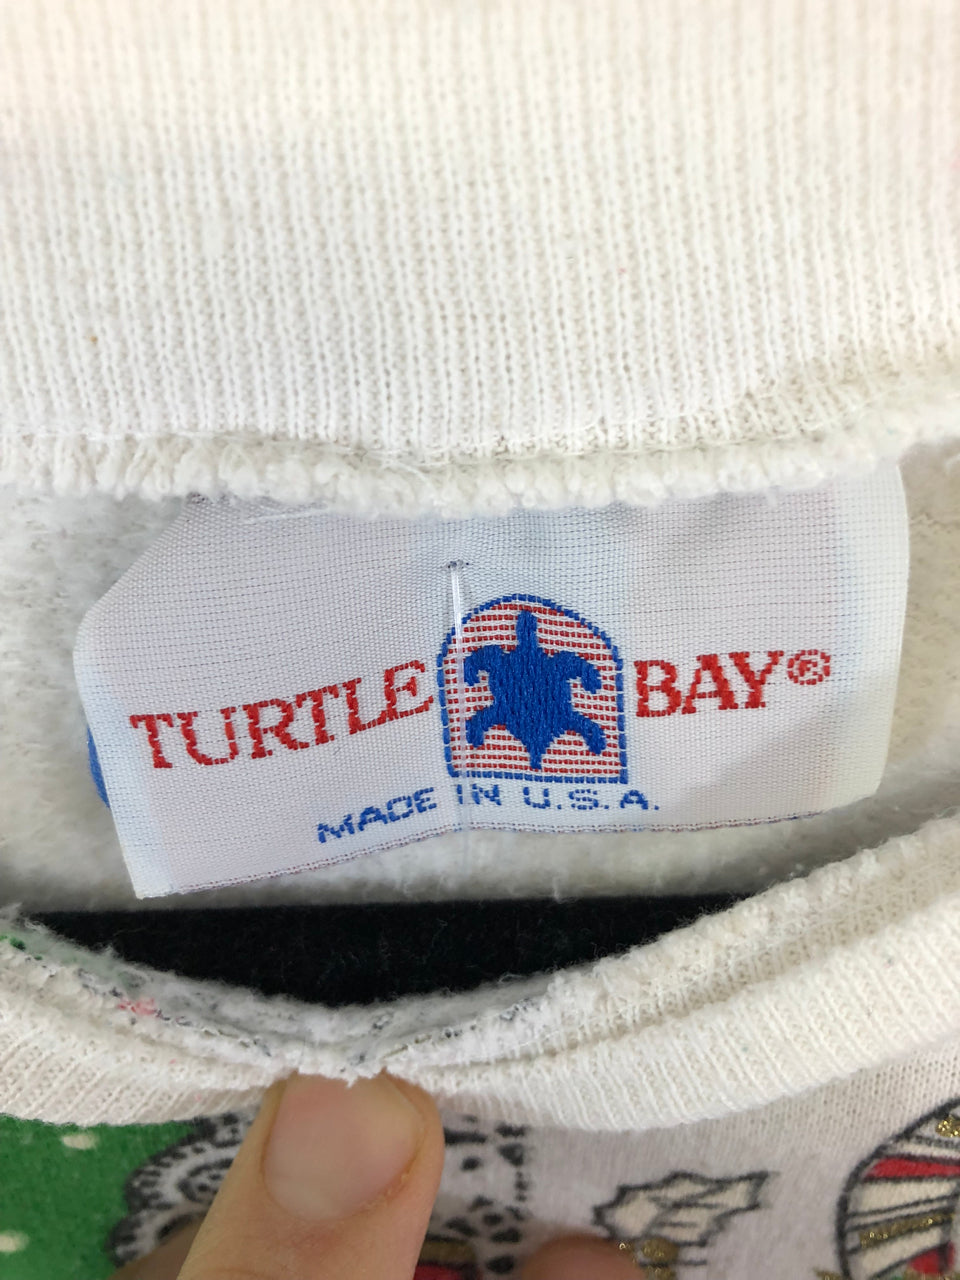 Turtle Bay Christmas Holiday Sweatshirt